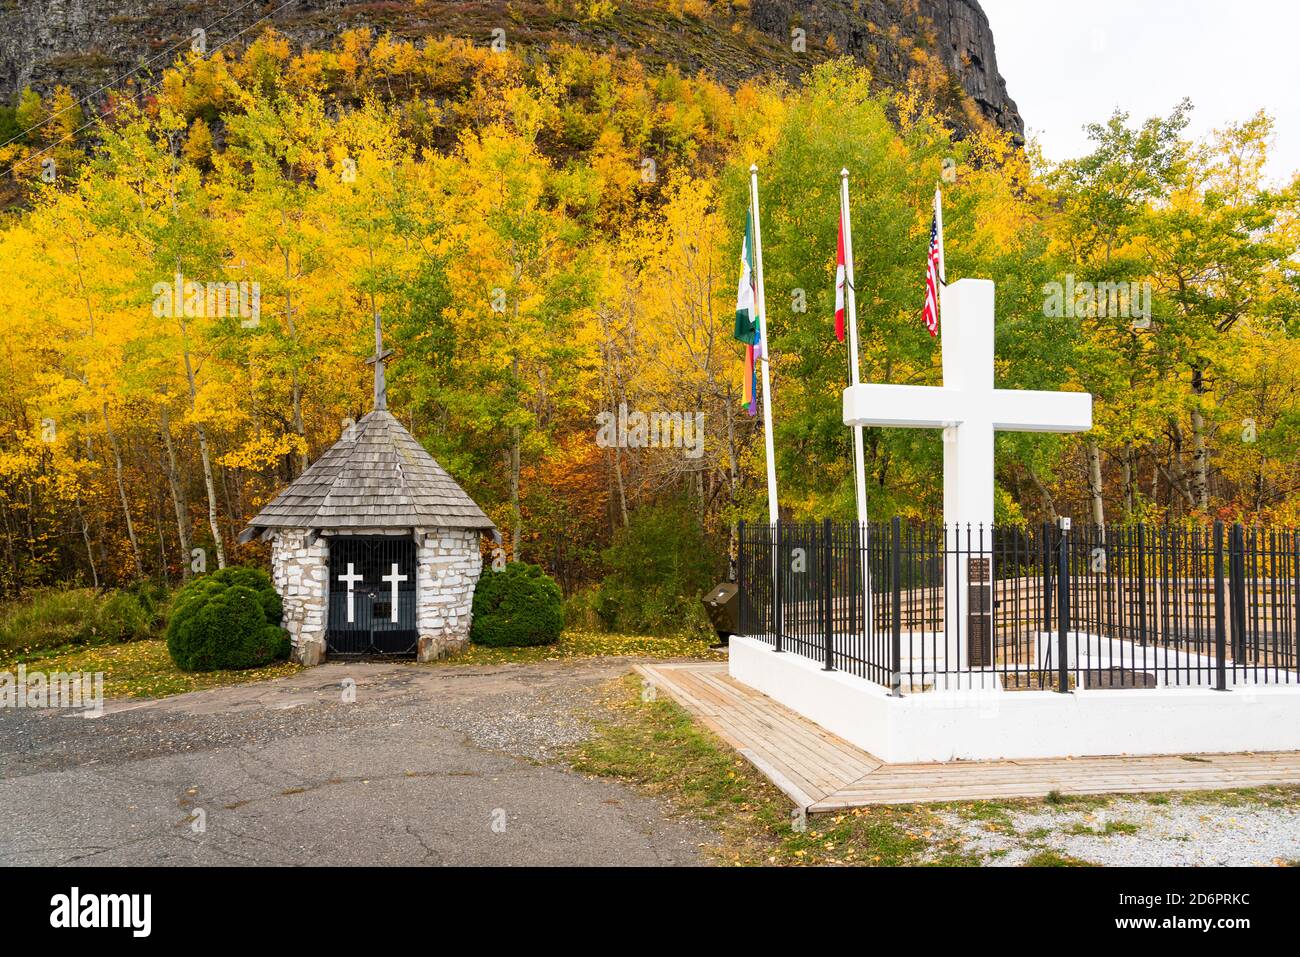 Petite chapelle et feuillage d'automne au point d'observation de Mount McKay Thunder Bay, Ontario, Canada. Banque D'Images